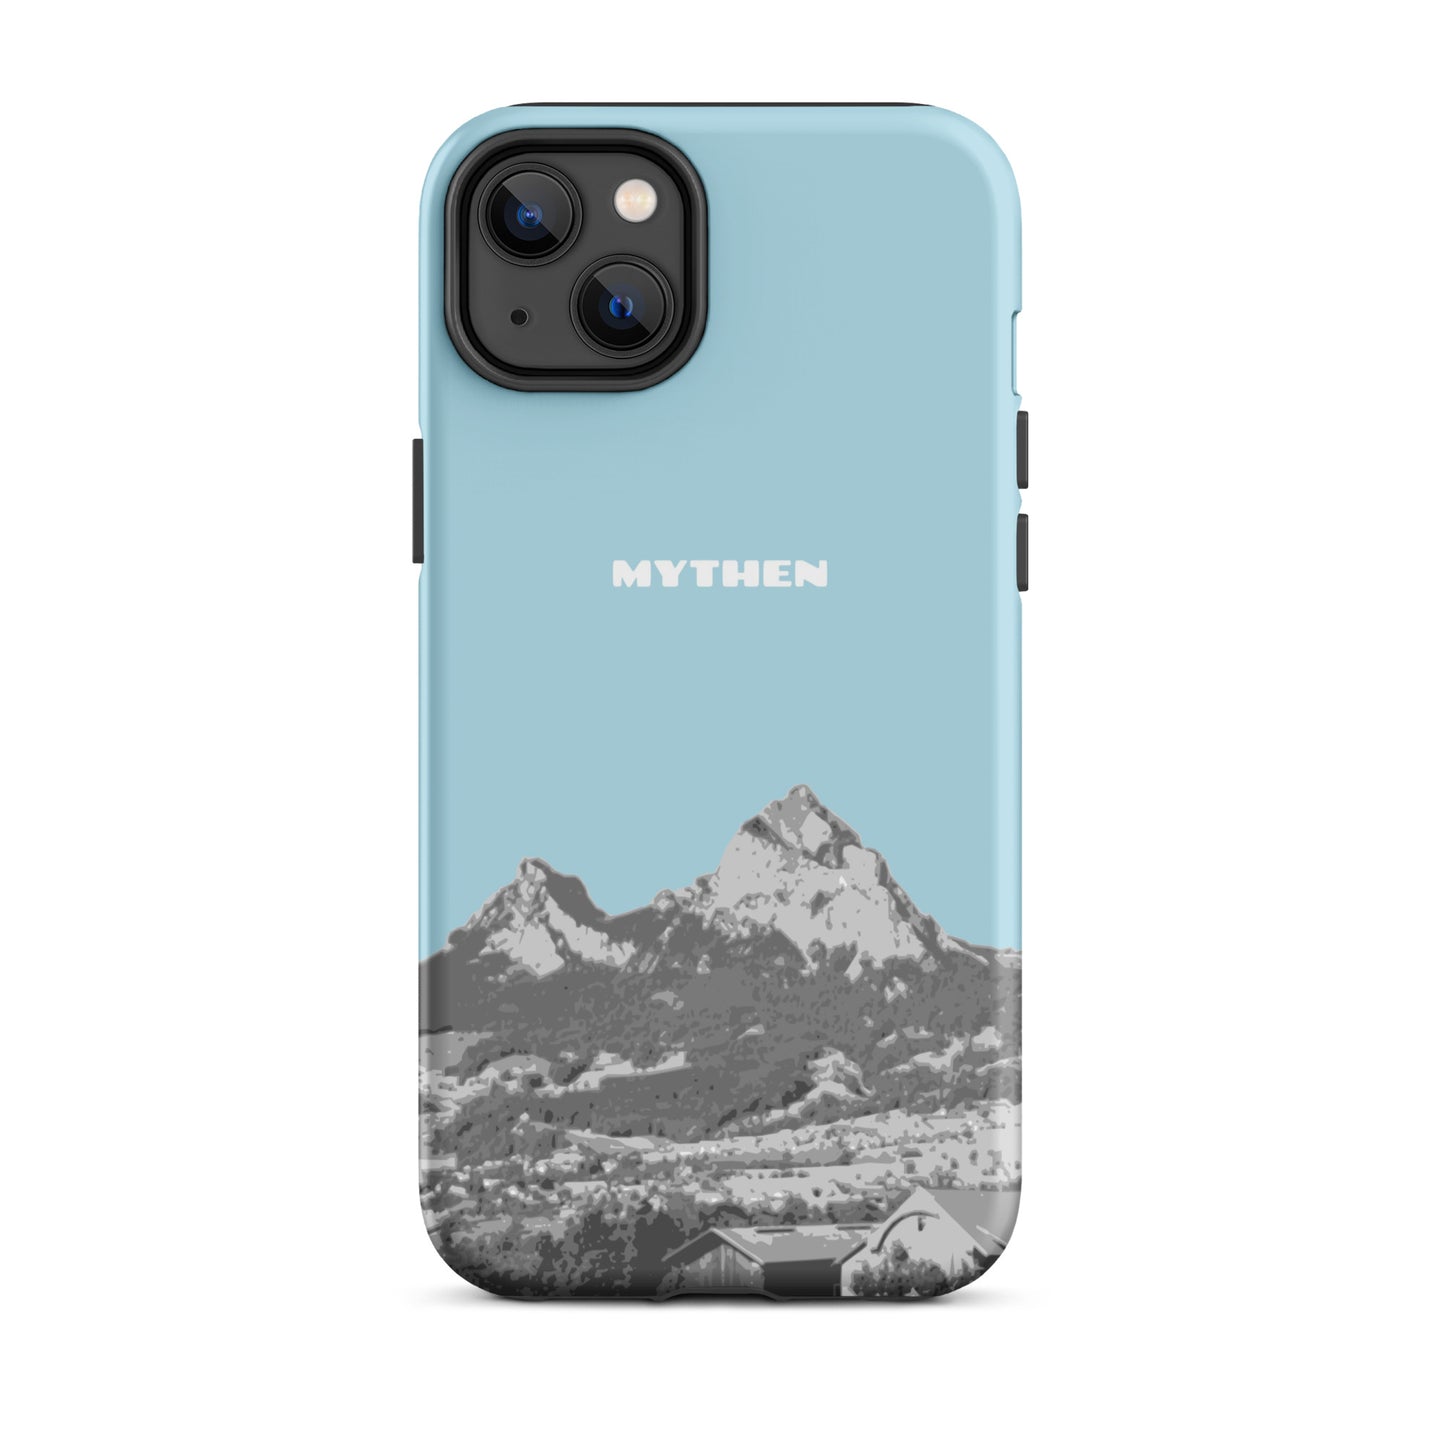 Hülle für das iPhone 14 Plus von Apple in der Farbe Hellblau, die den Grossen Mythen und den Kleinen Mythen bei Schwyz zeigt. 